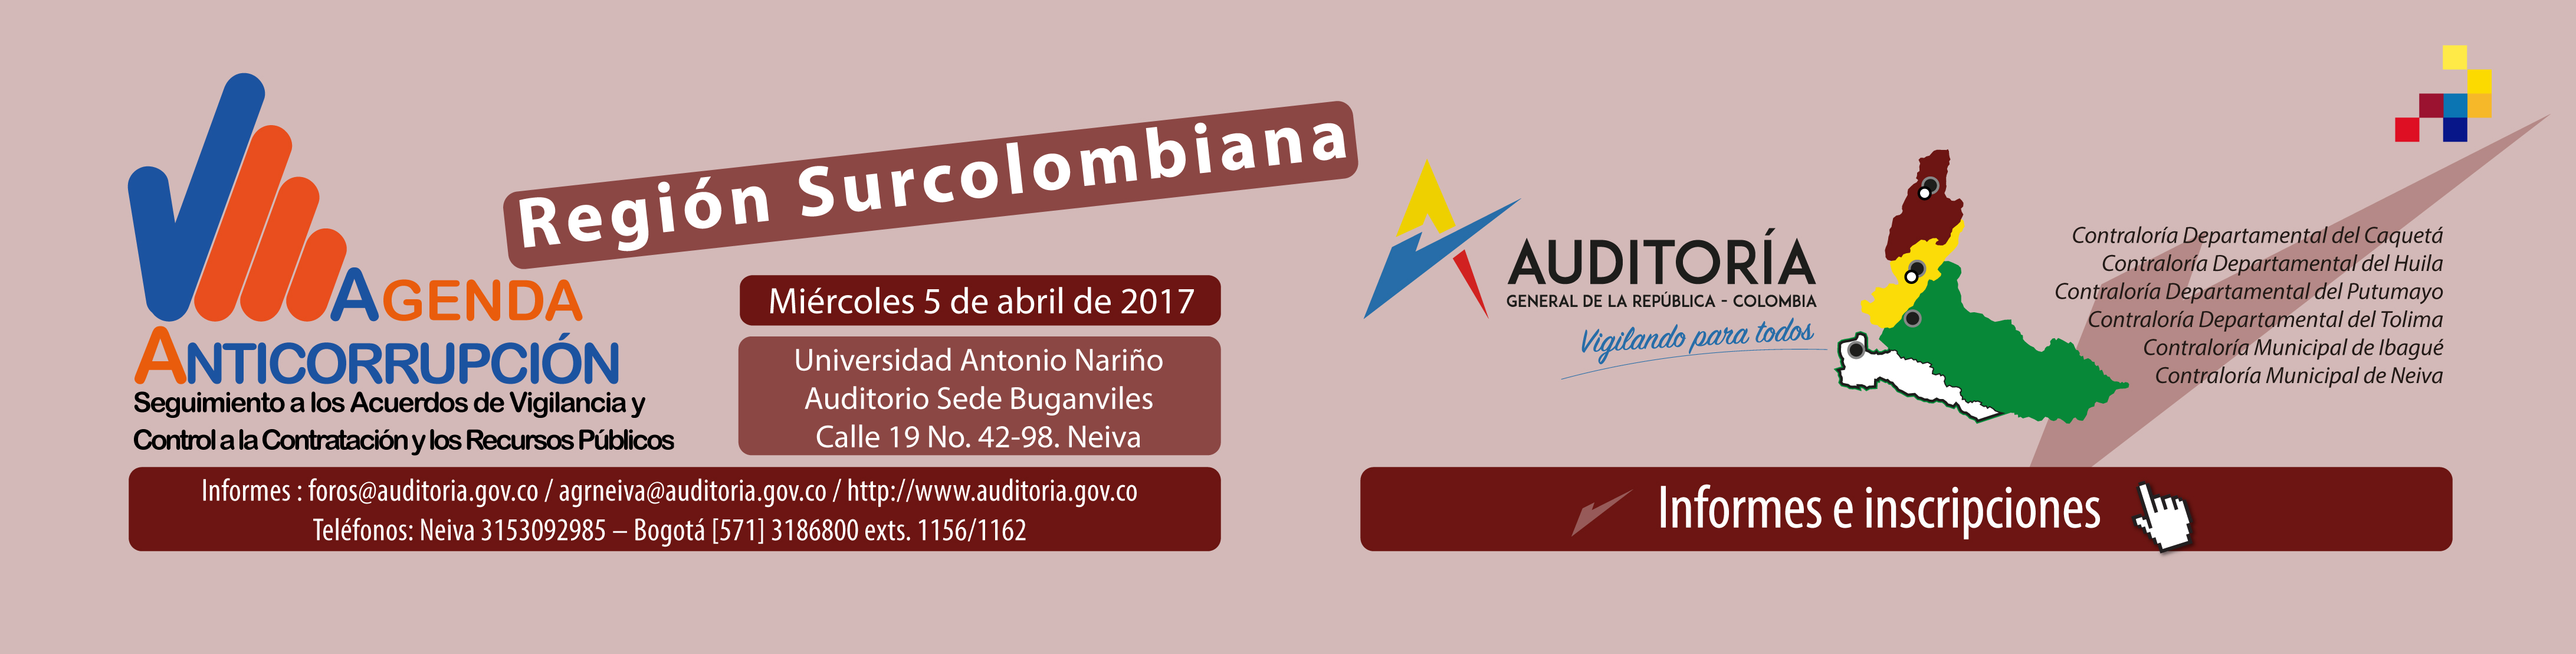 Agenda anticorrupción - Región Surcolombiana